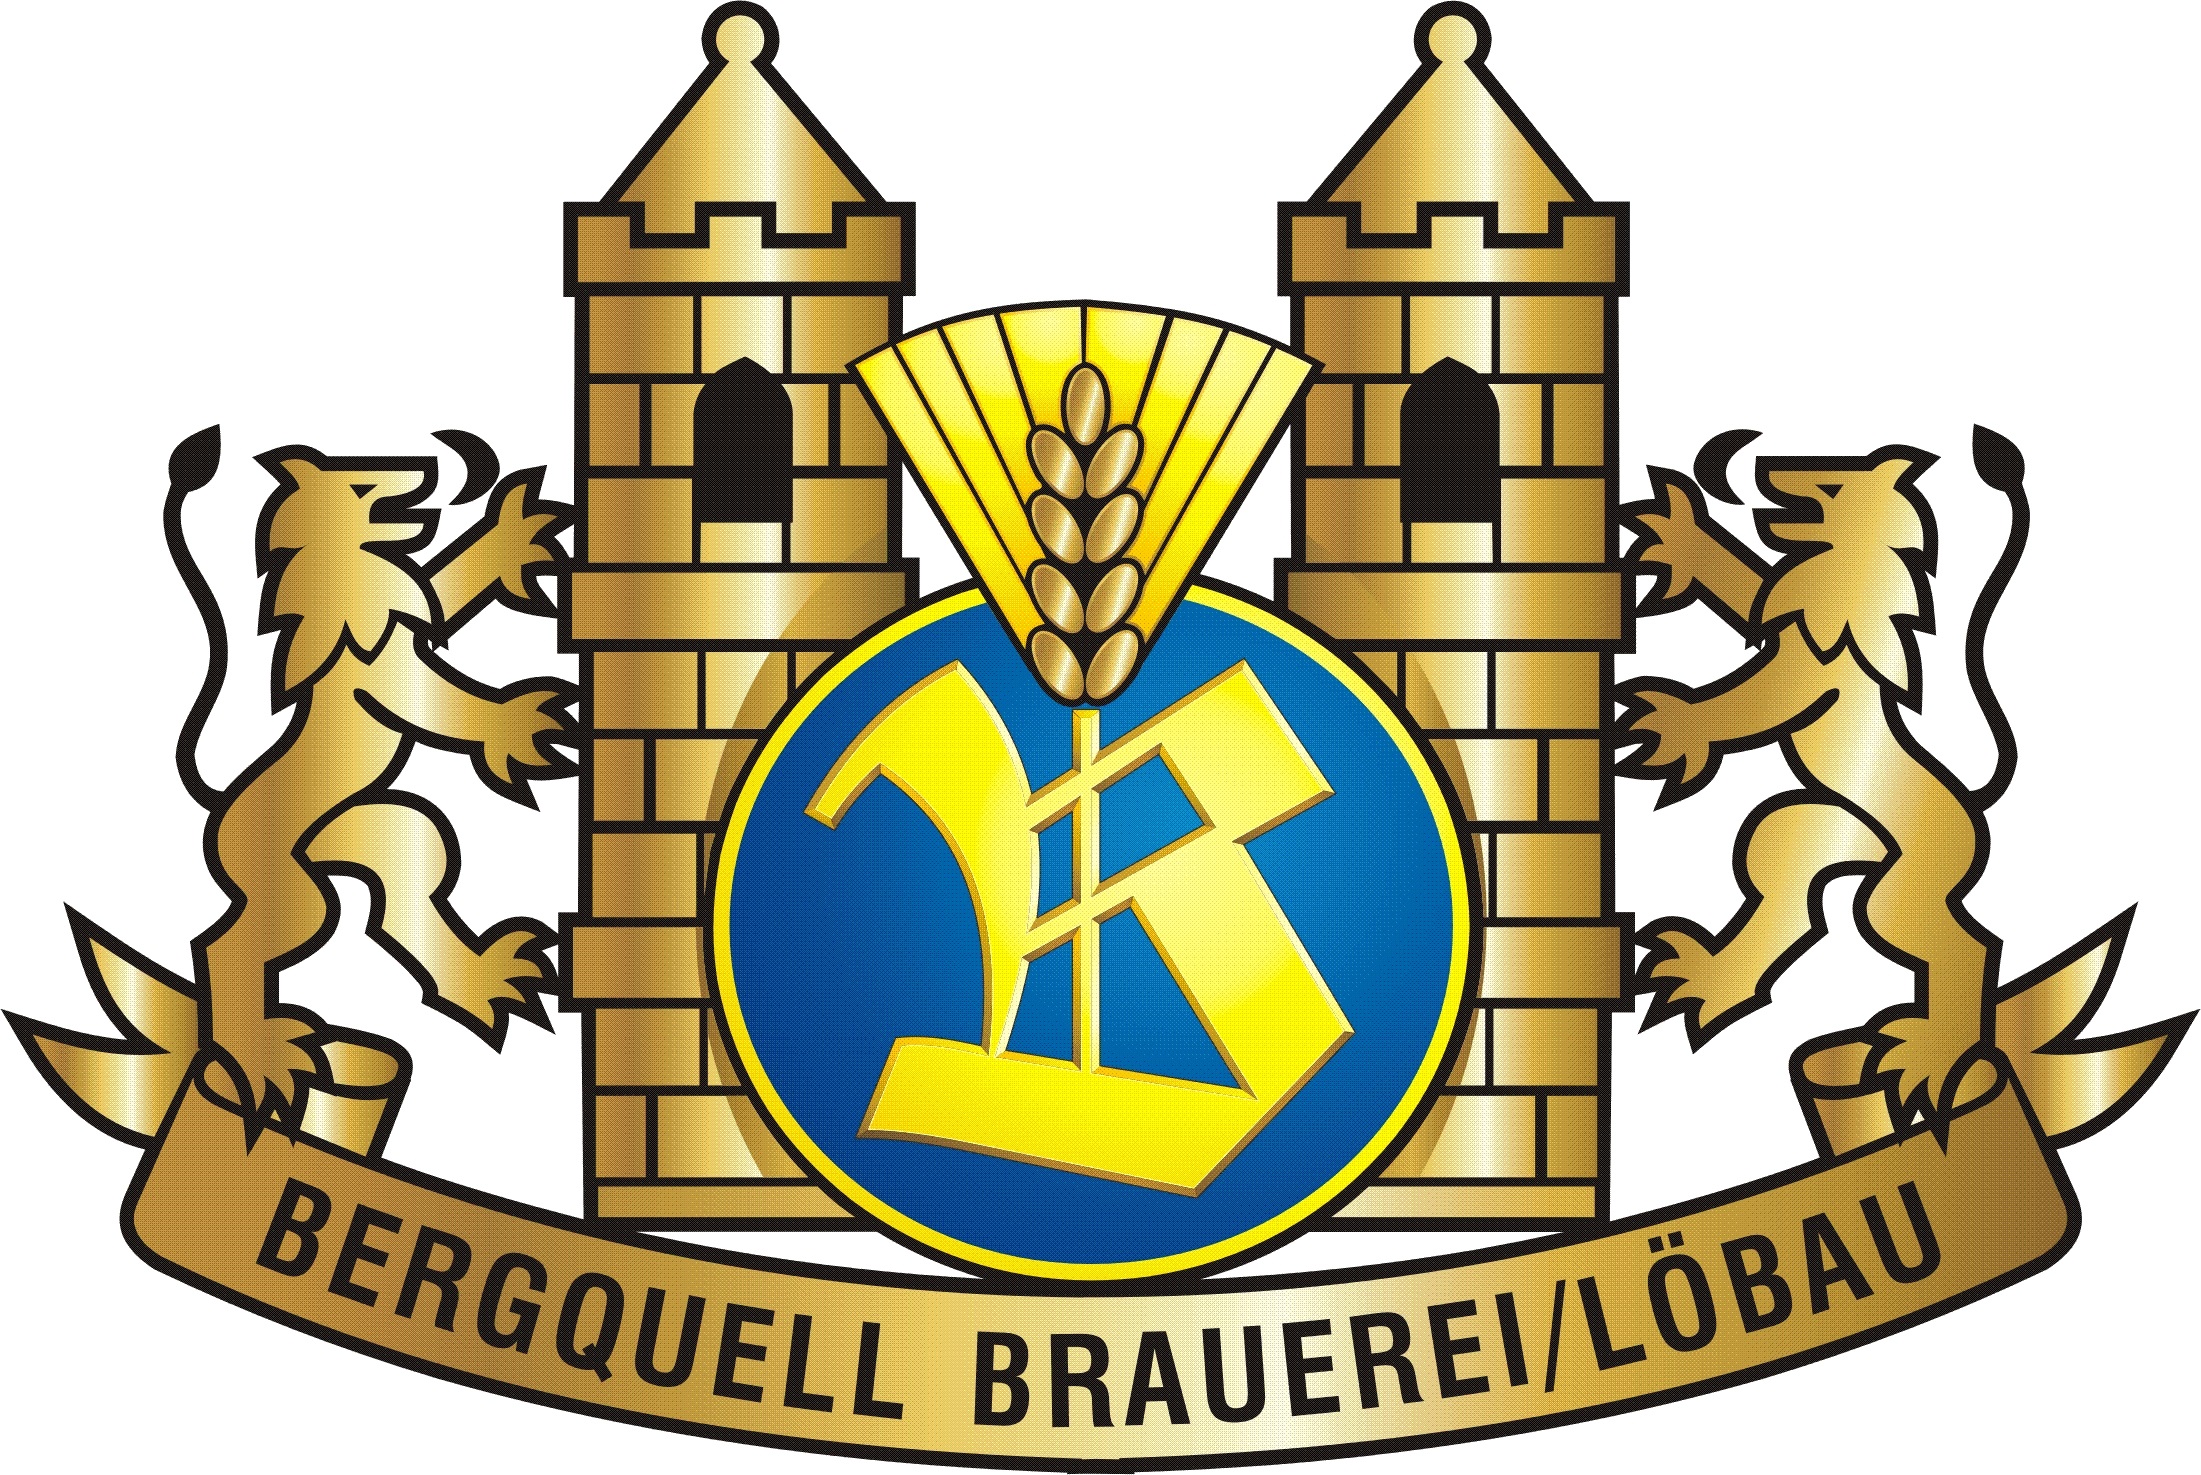 Bergquell-Brauerei Löbau GmbH, Weststraße 7, 02708 Löbau, Deutschland